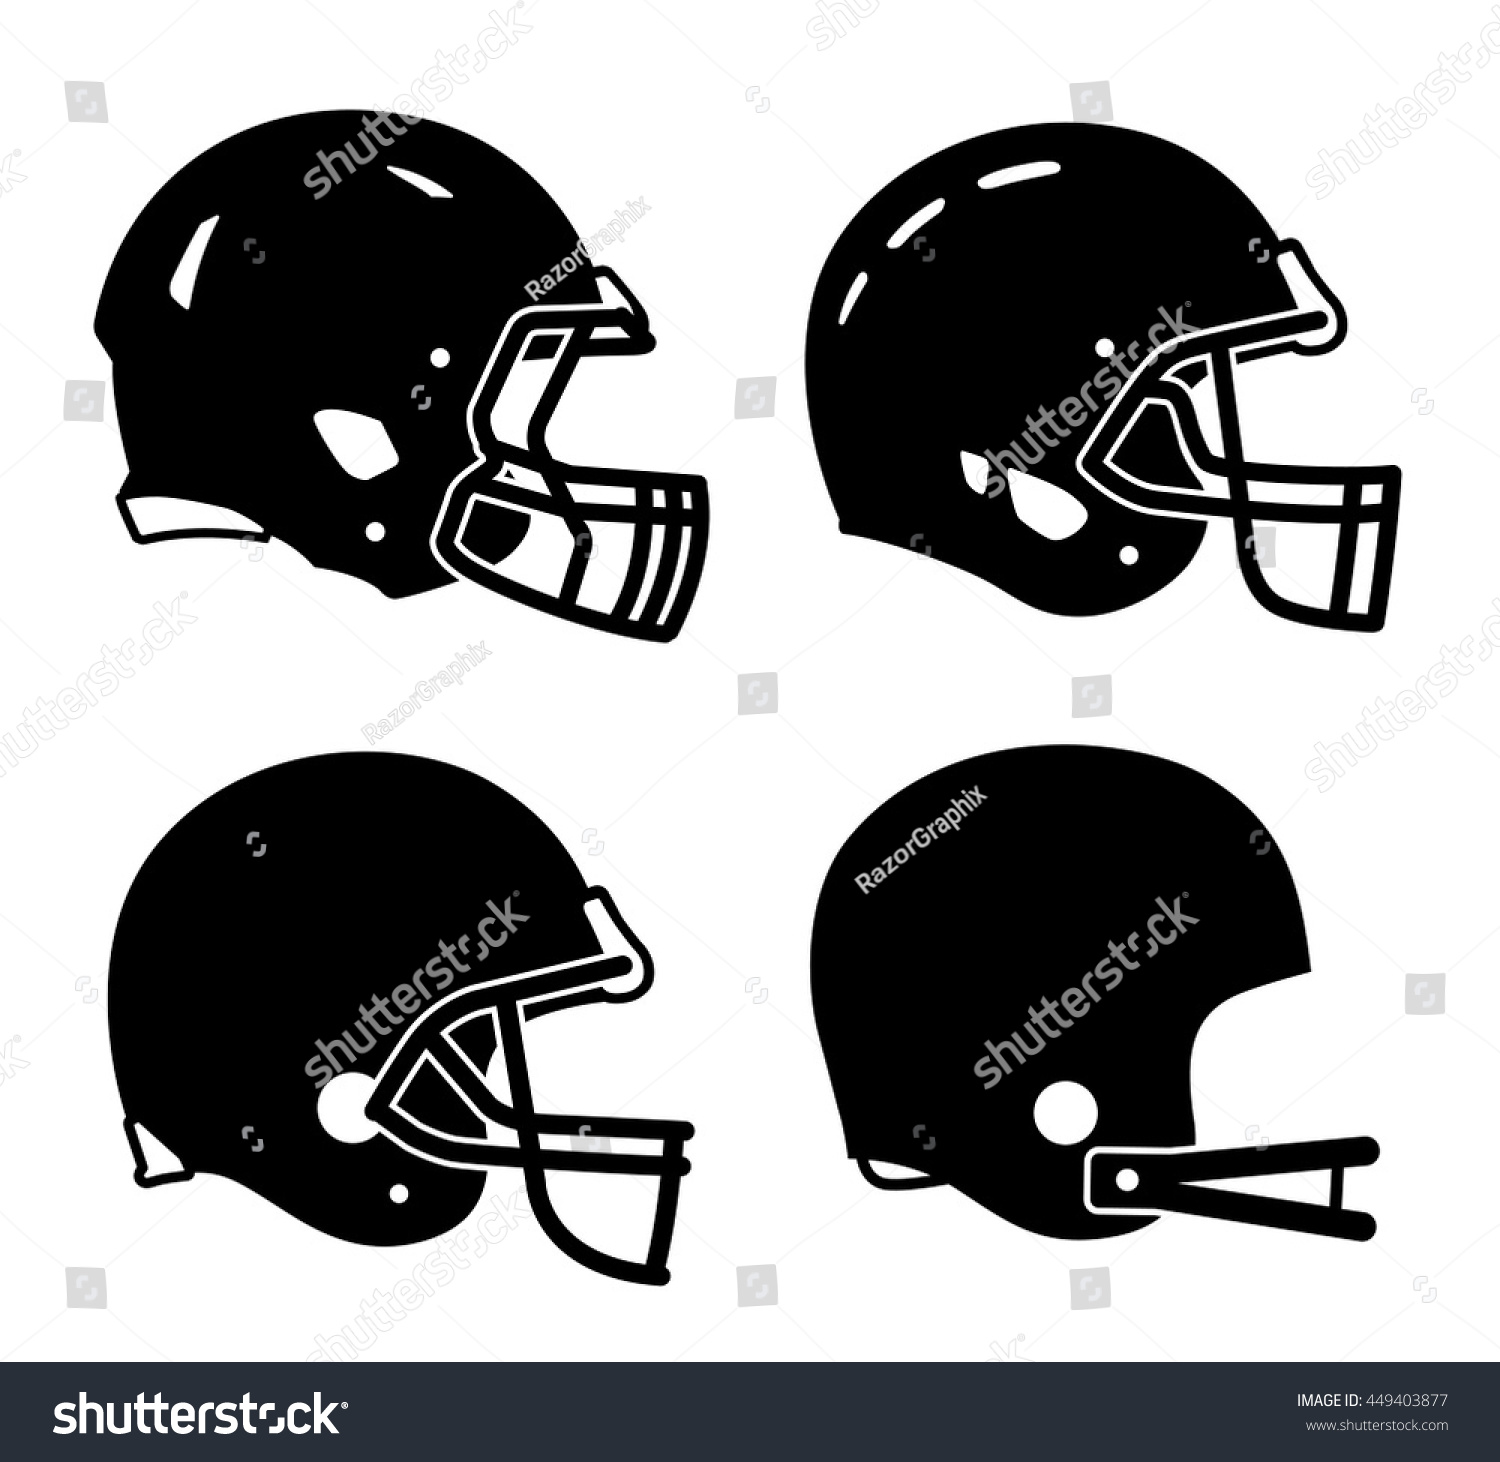 American-football-helmet Images, Stock Photos & Vectors | Shutterstock